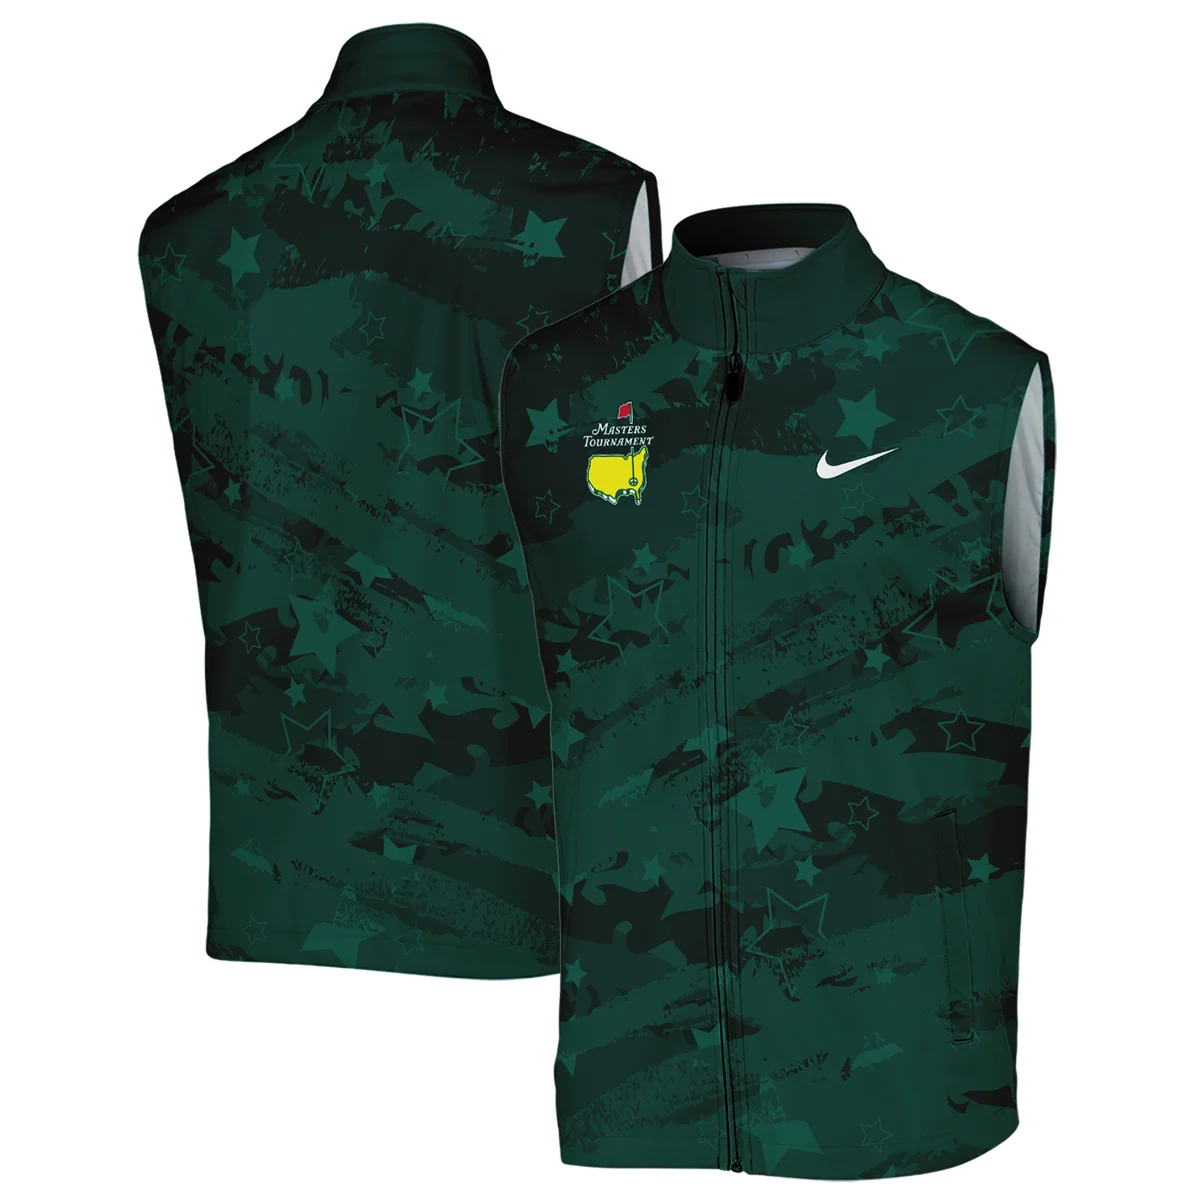 Dark Green Stars Pattern Grunge Background Masters Tournament Nike Hoodie Shirt Style Classic Hoodie Shirt